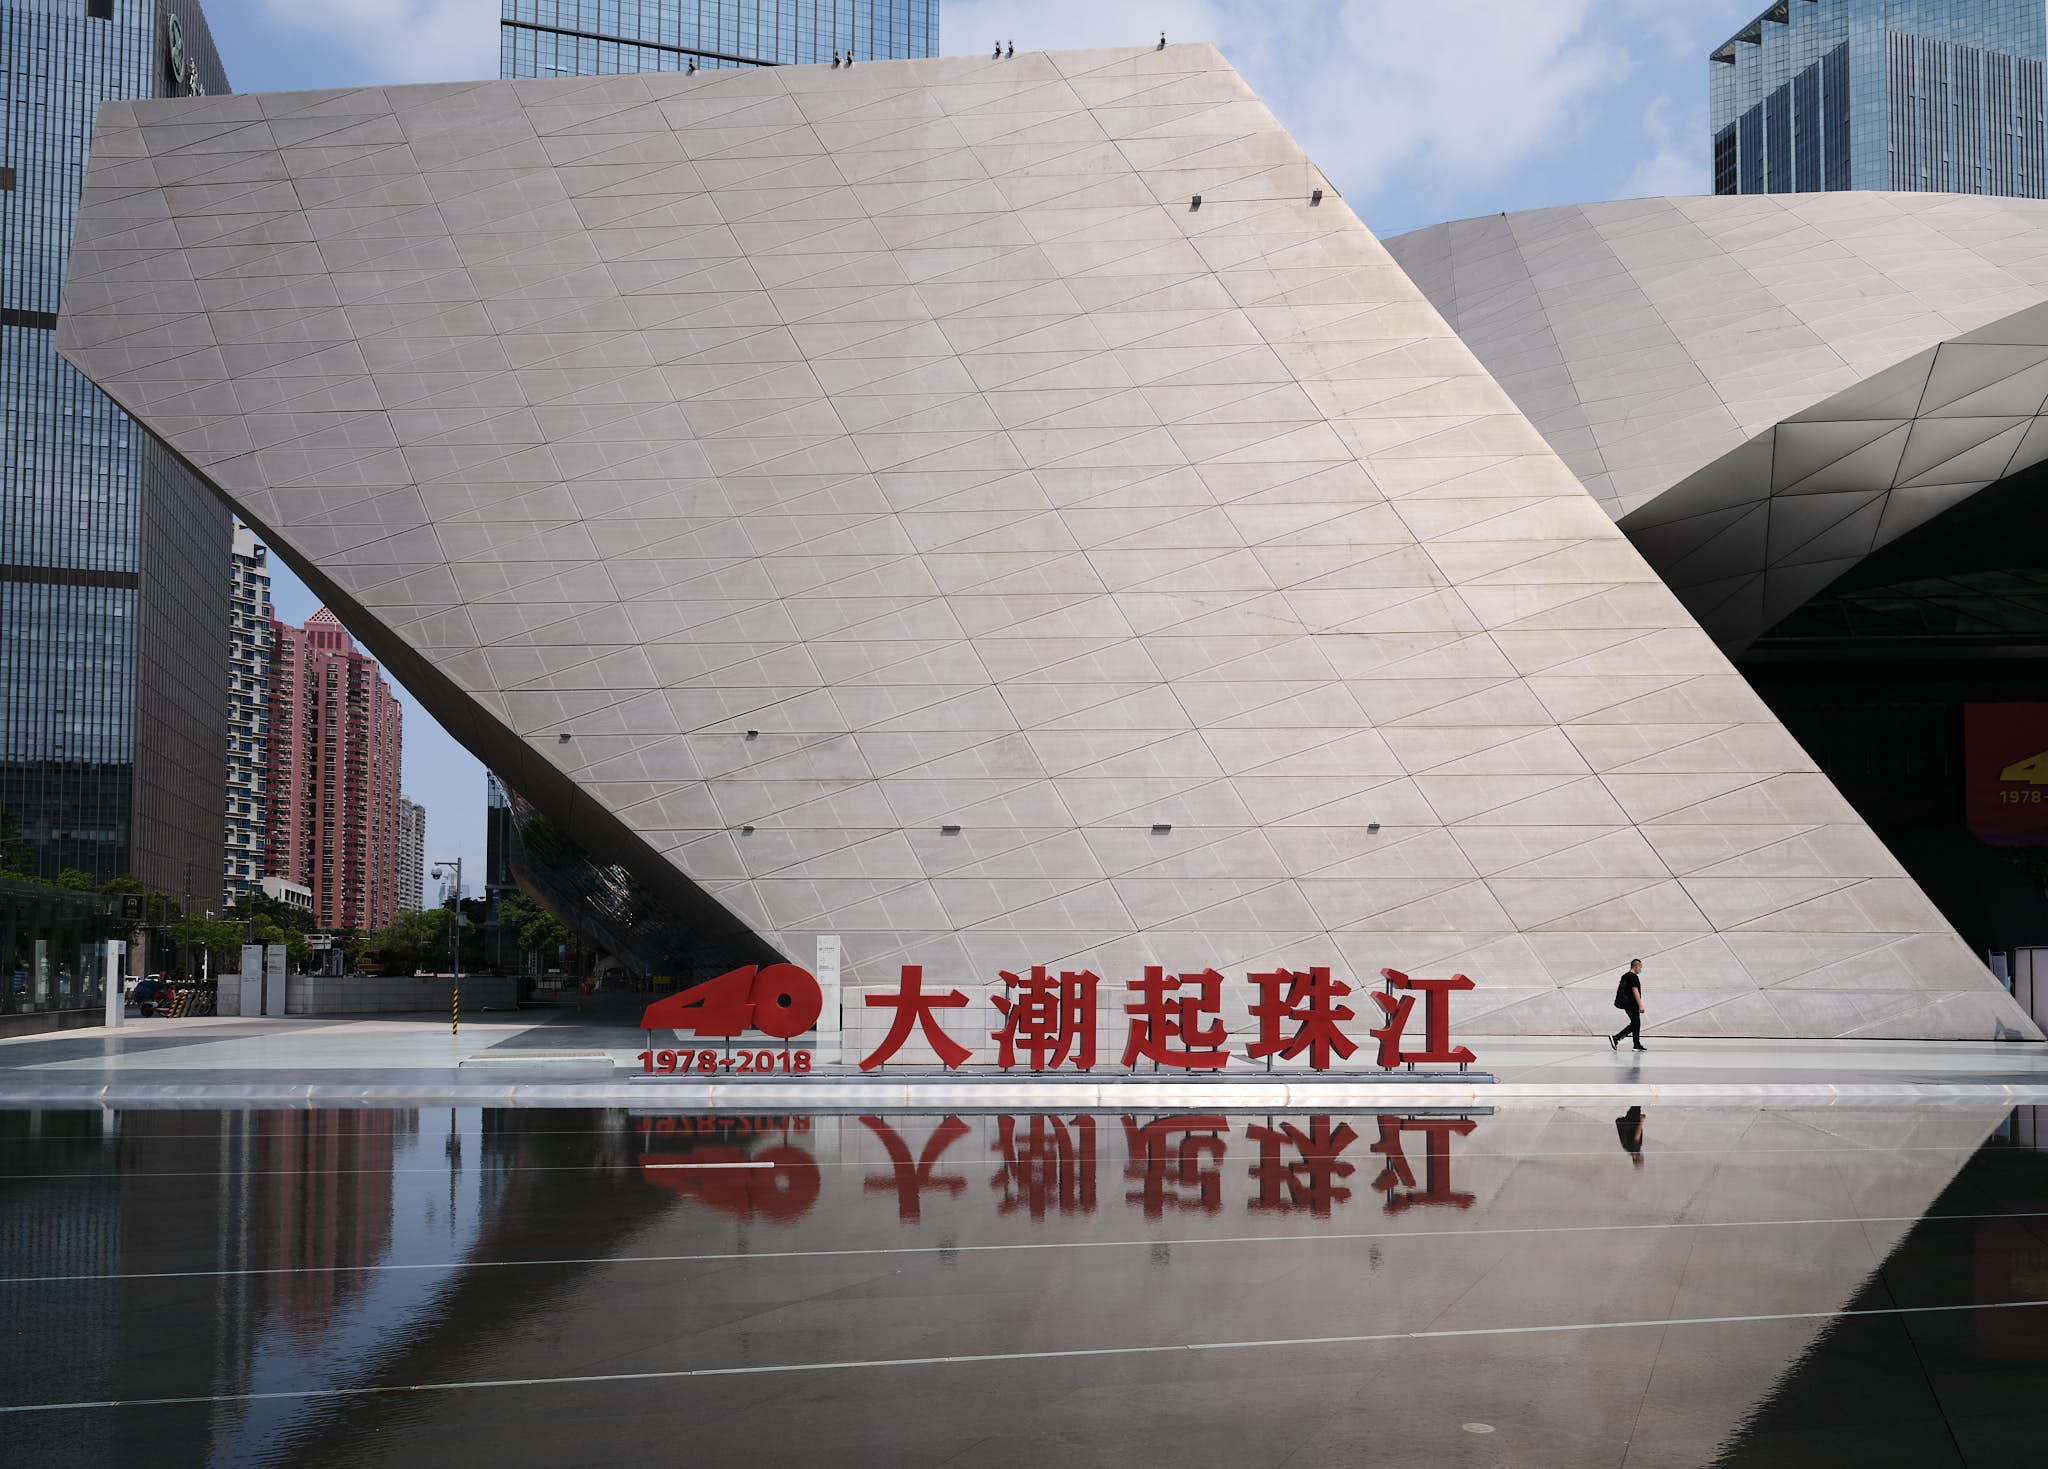 Shenzhen arts center